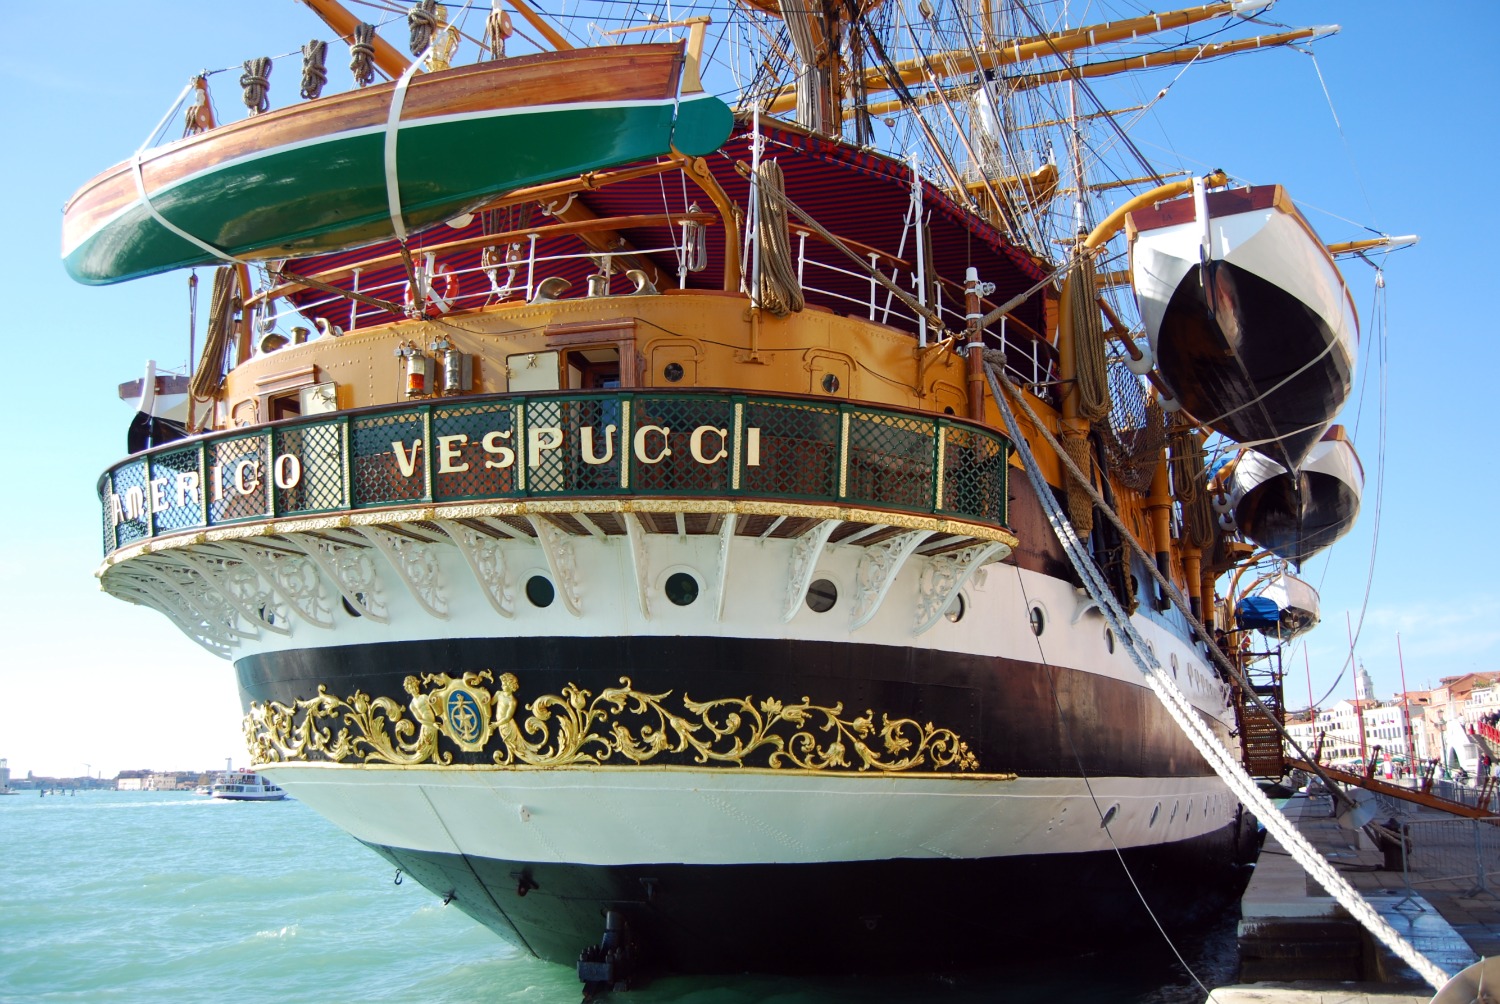 A Castellammare di Stabia l’annullo filatelico dedicato al 90° anniversario del varo della nave scuola Amerigo Vespucci